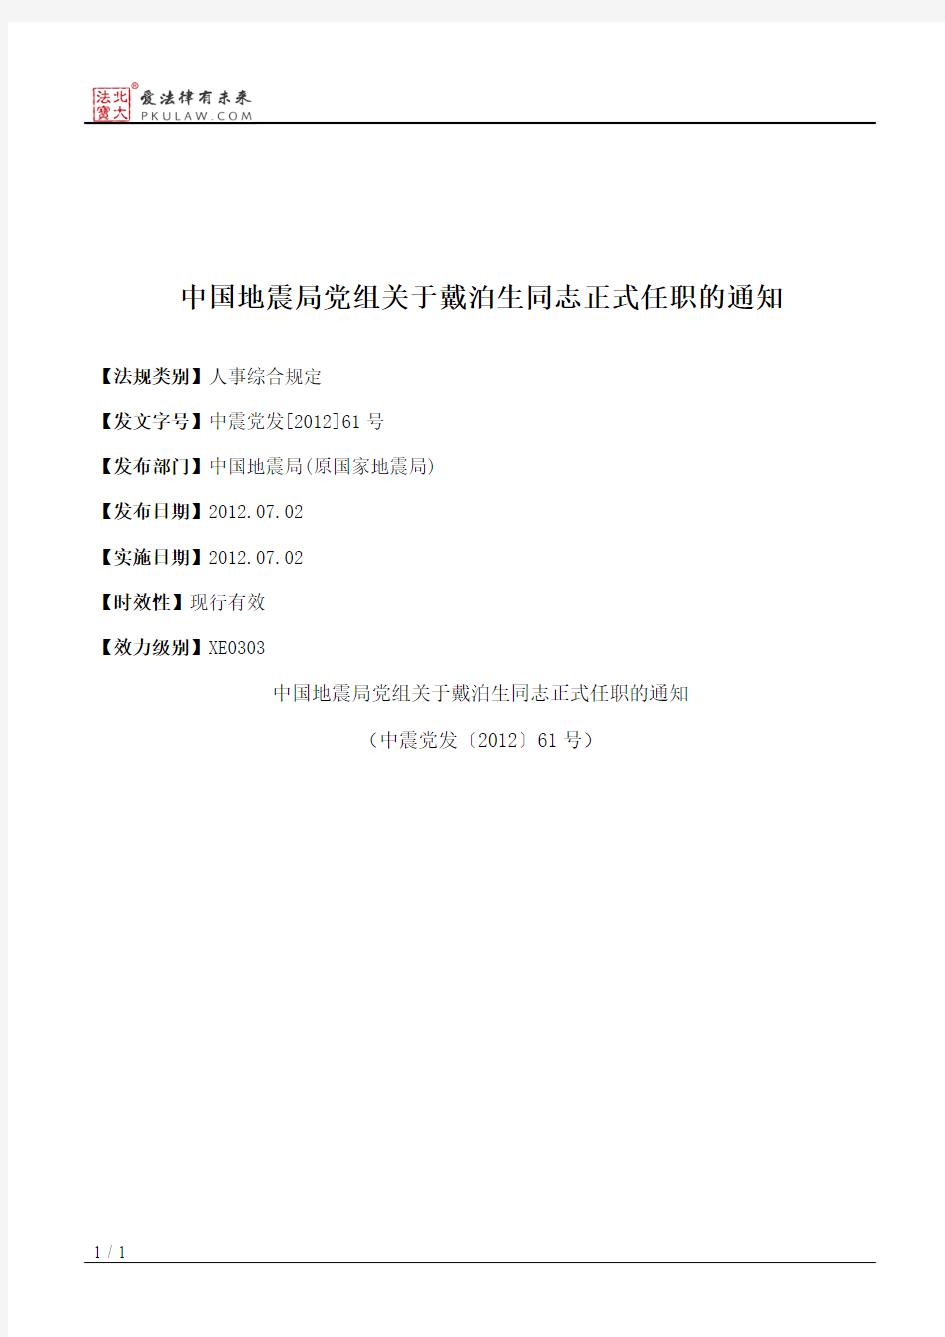 中国地震局党组关于戴泊生同志正式任职的通知